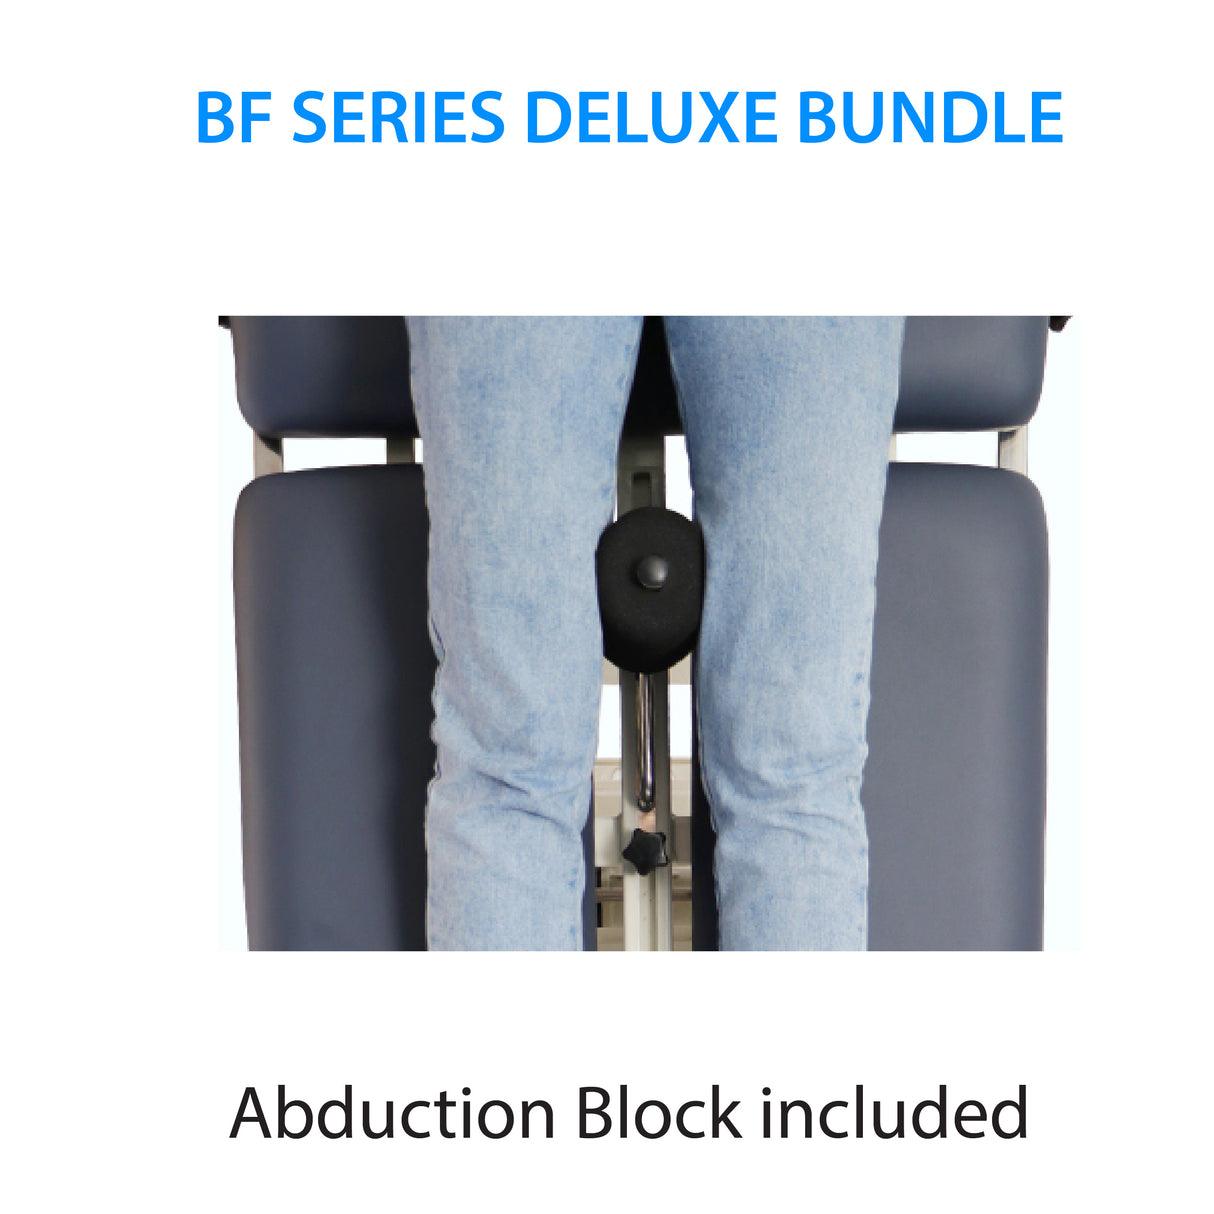 Table de traitement plate électrique inclinable Deluxe Bundle série BF 